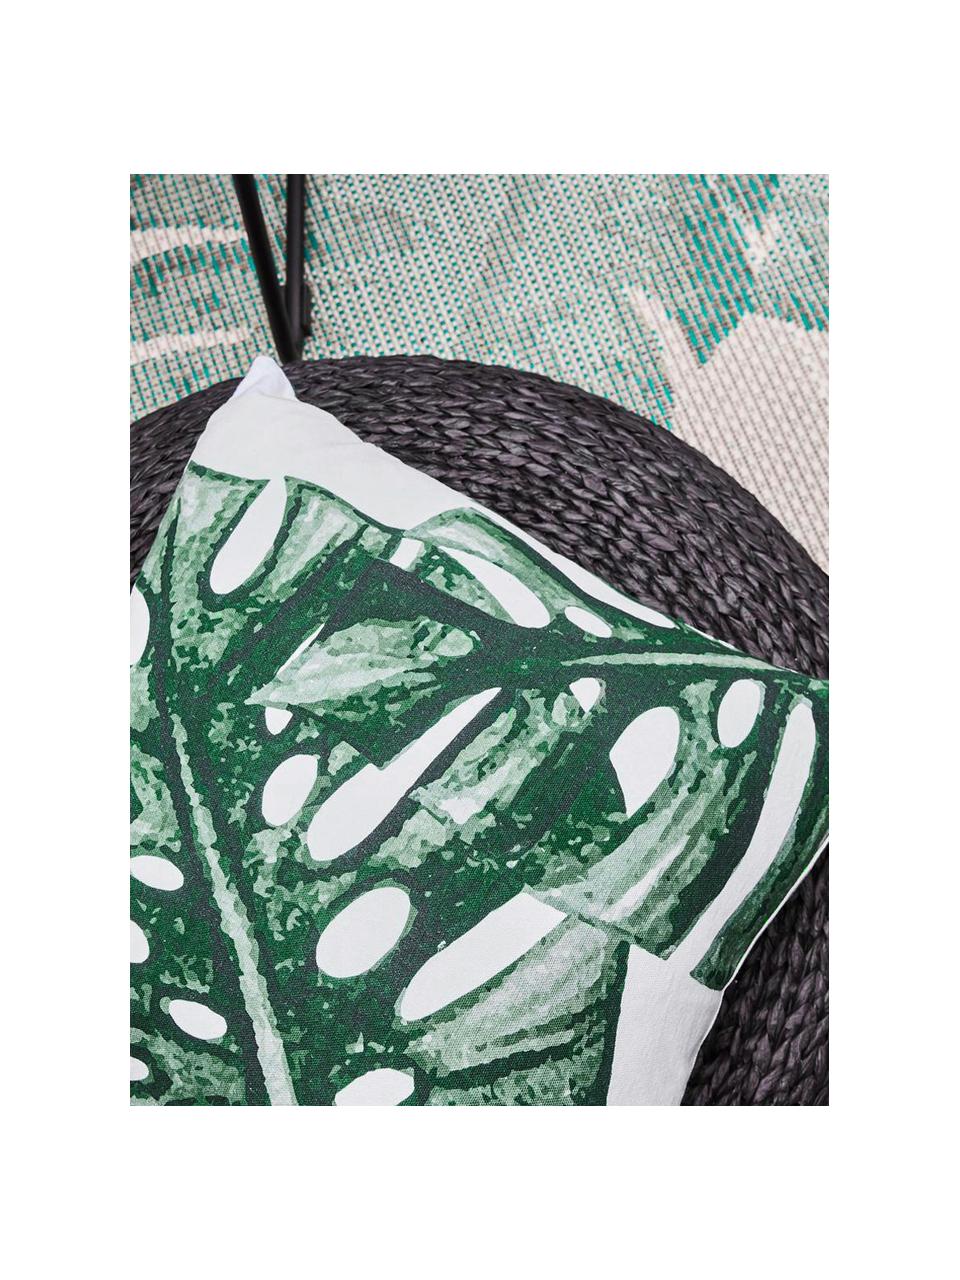 Kussenhoes Tropics met monstera print in groen/wit, 100% katoen, Groen, wit, 40 x 40 cm